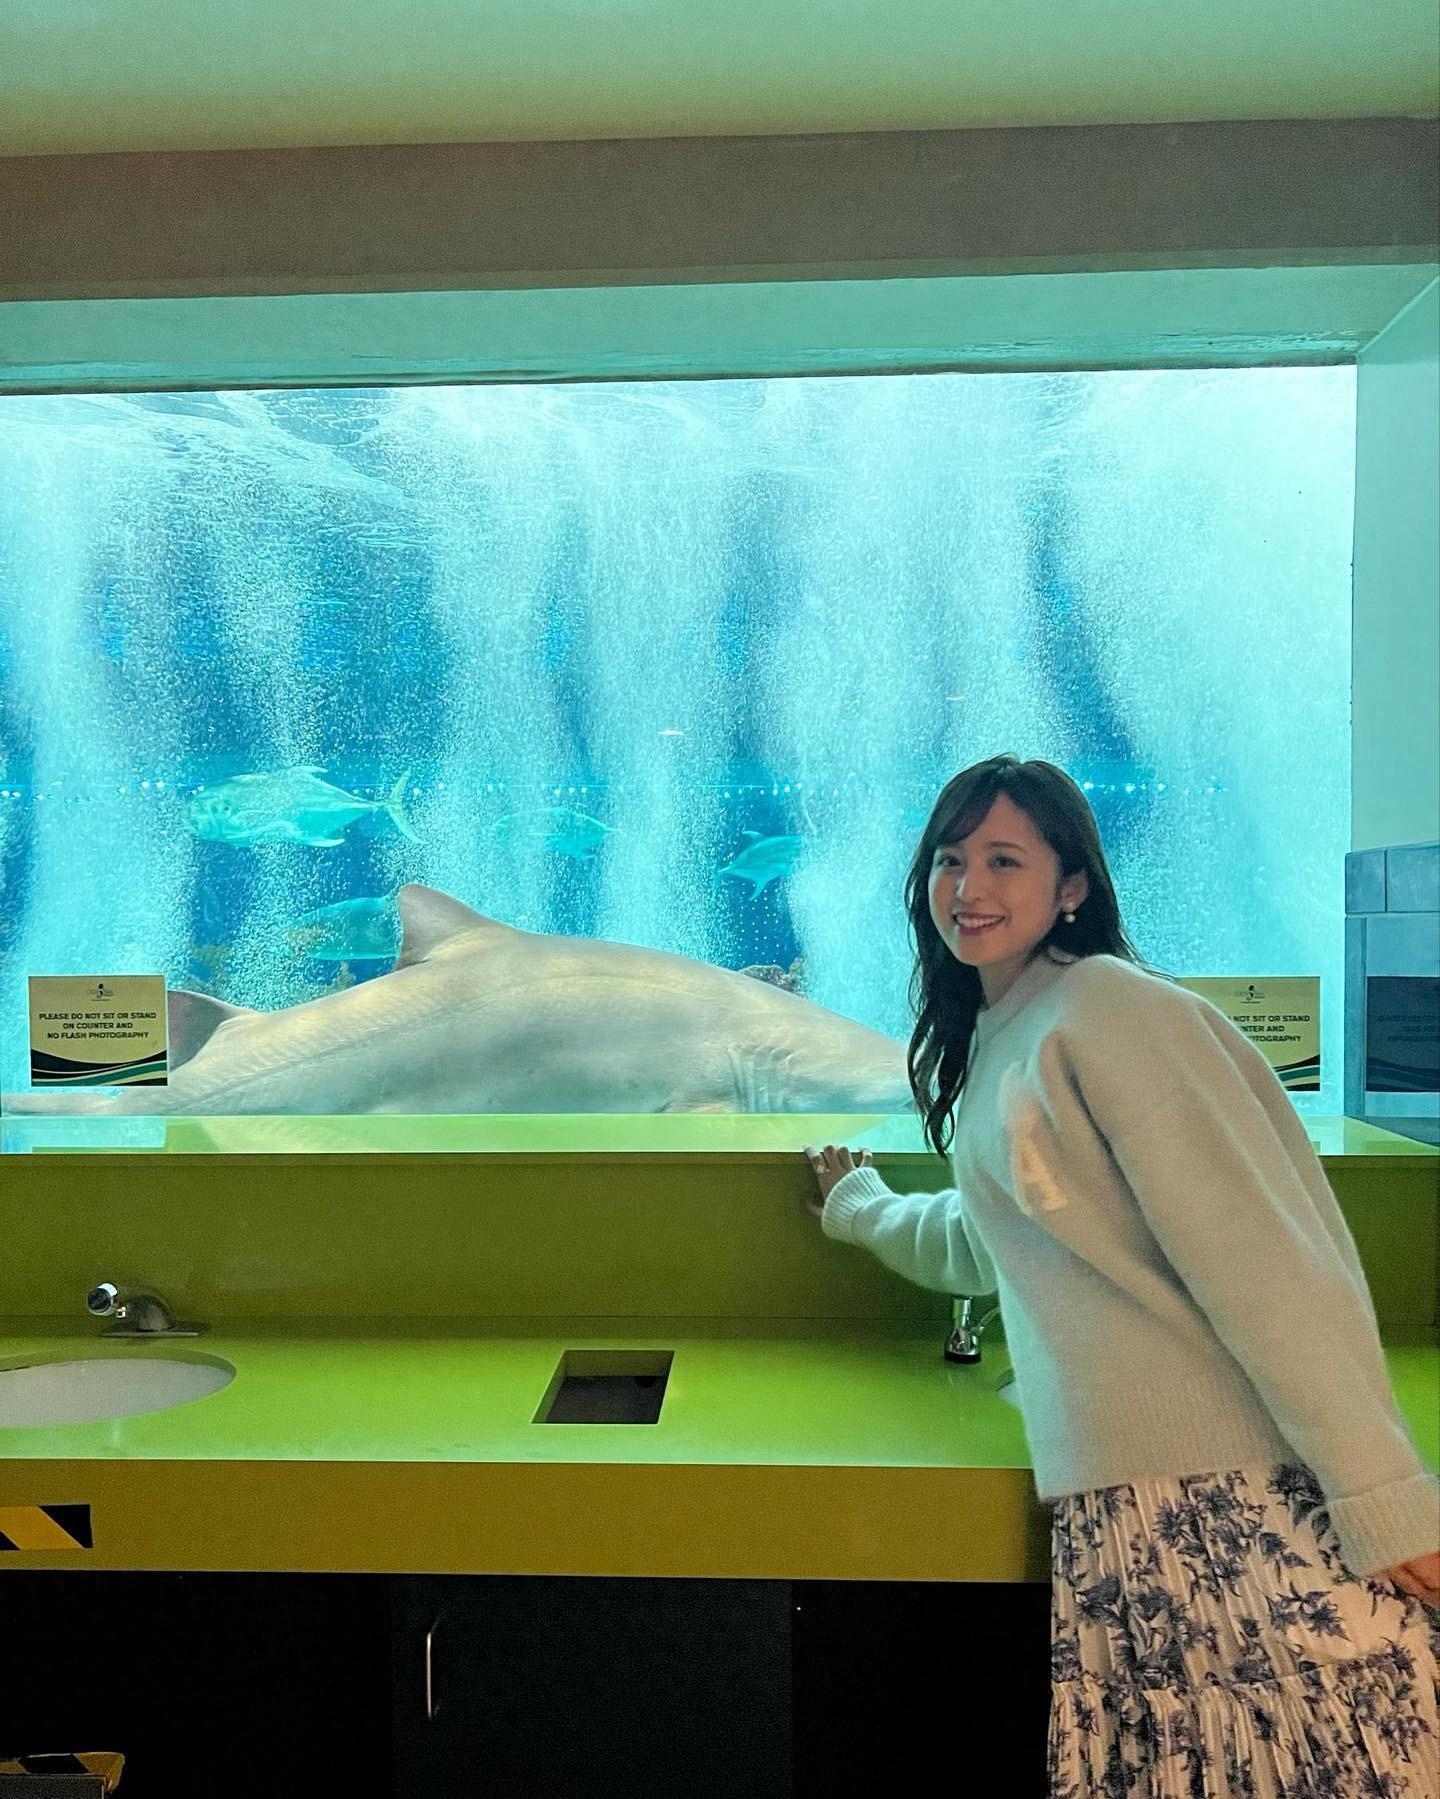 跟着丈夫游遍美国!渡边妻子晒亚利桑那水族馆 WC里竟能看到大鲨鱼